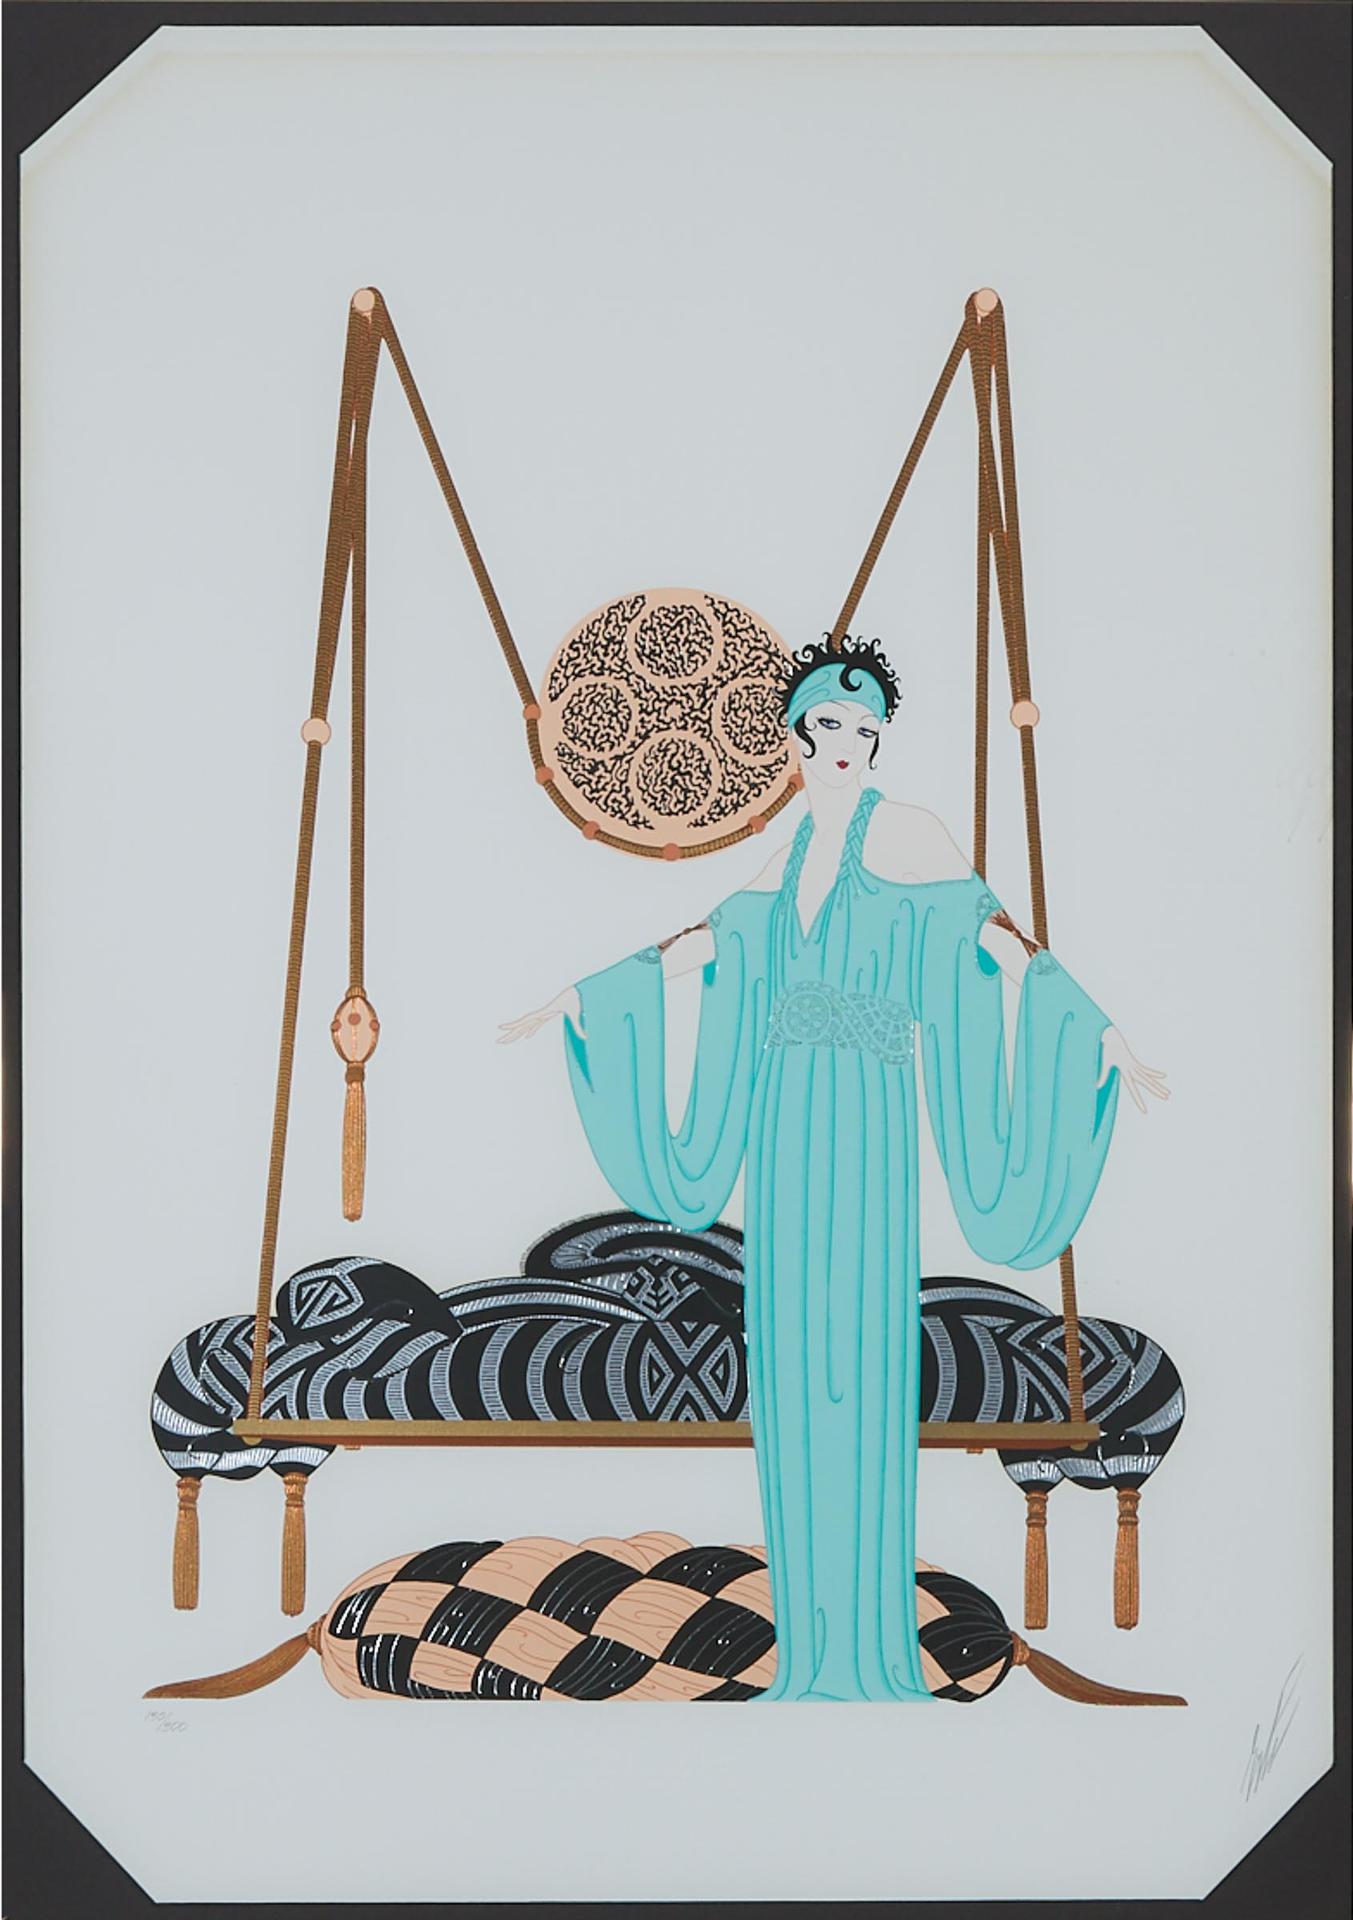 Erté (1892-1990) - Pillow Swing, 1985